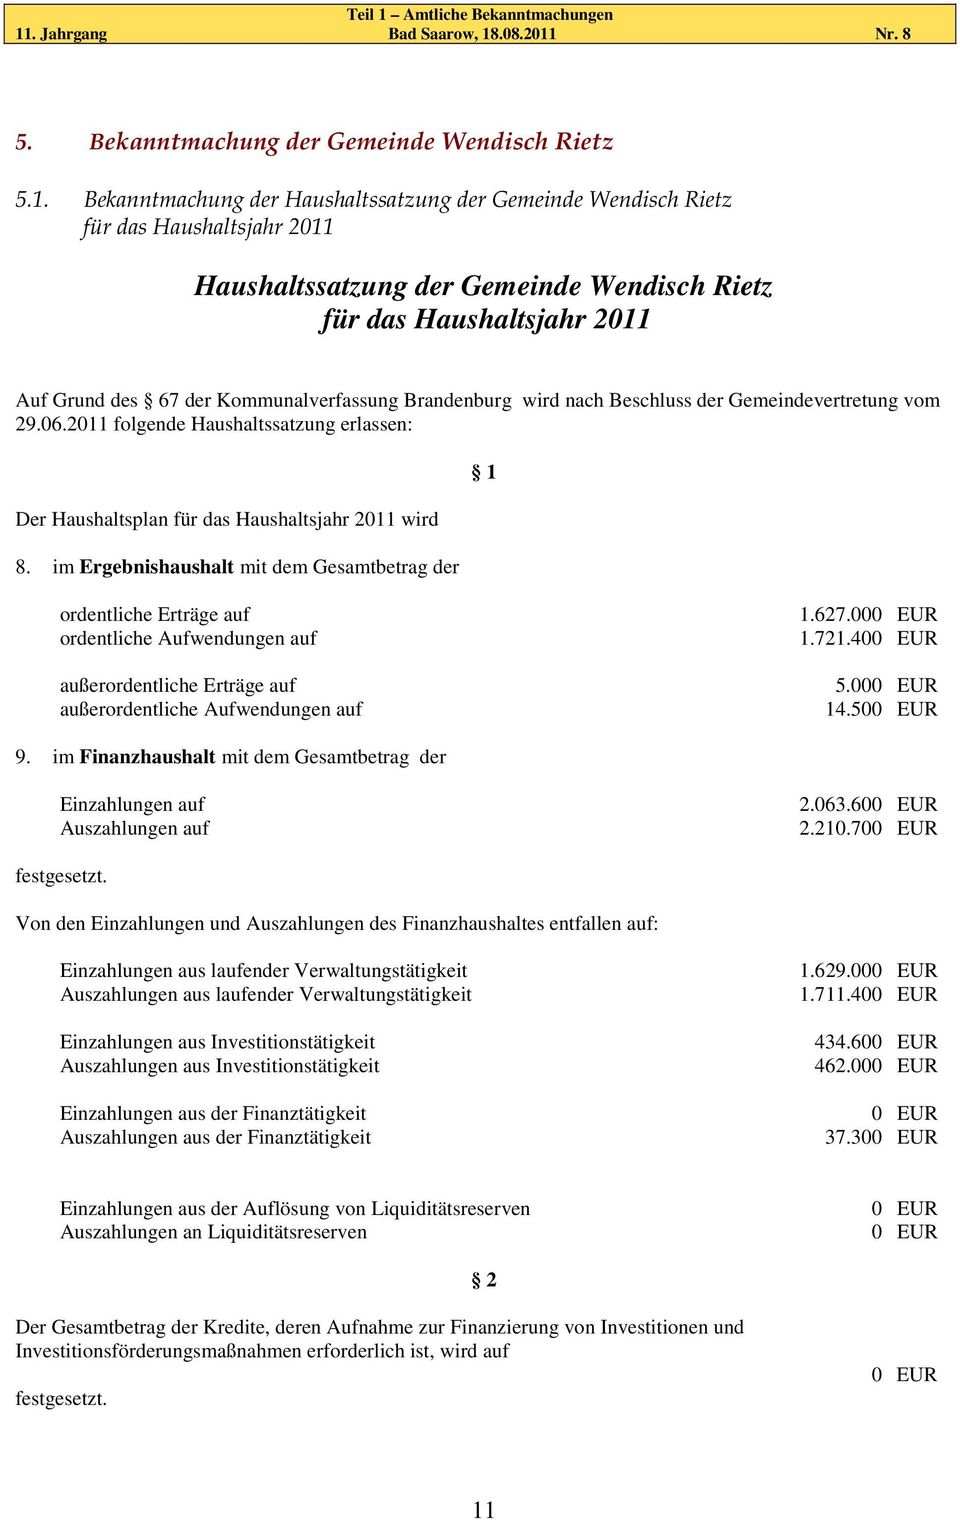 Bekanntmachung der Haushaltssatzung der Gemeinde Wendisch Rietz für das Haushaltsjahr 2011 Haushaltssatzung der Gemeinde Wendisch Rietz für das Haushaltsjahr 2011 Auf Grund des 67 der